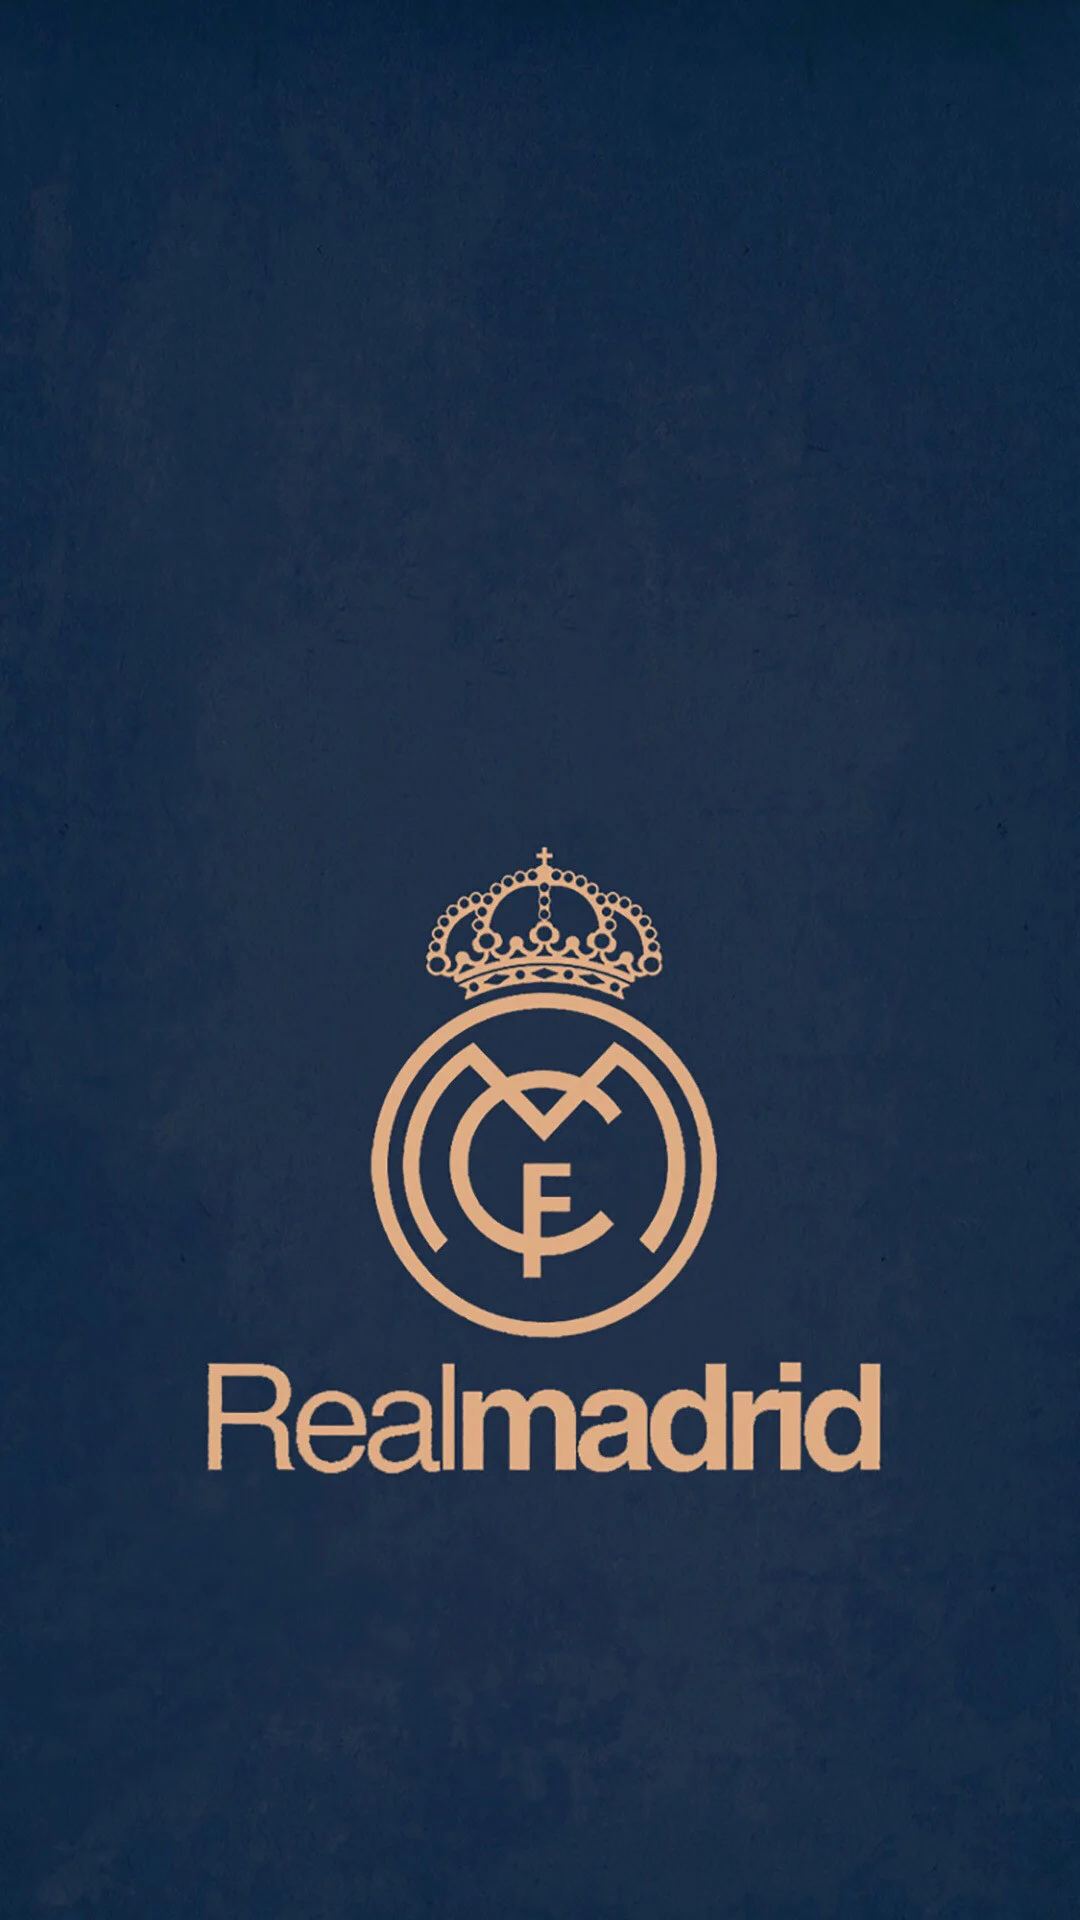 HD Real Madrid Wallpaper Ã RealMadrid Wallpaper